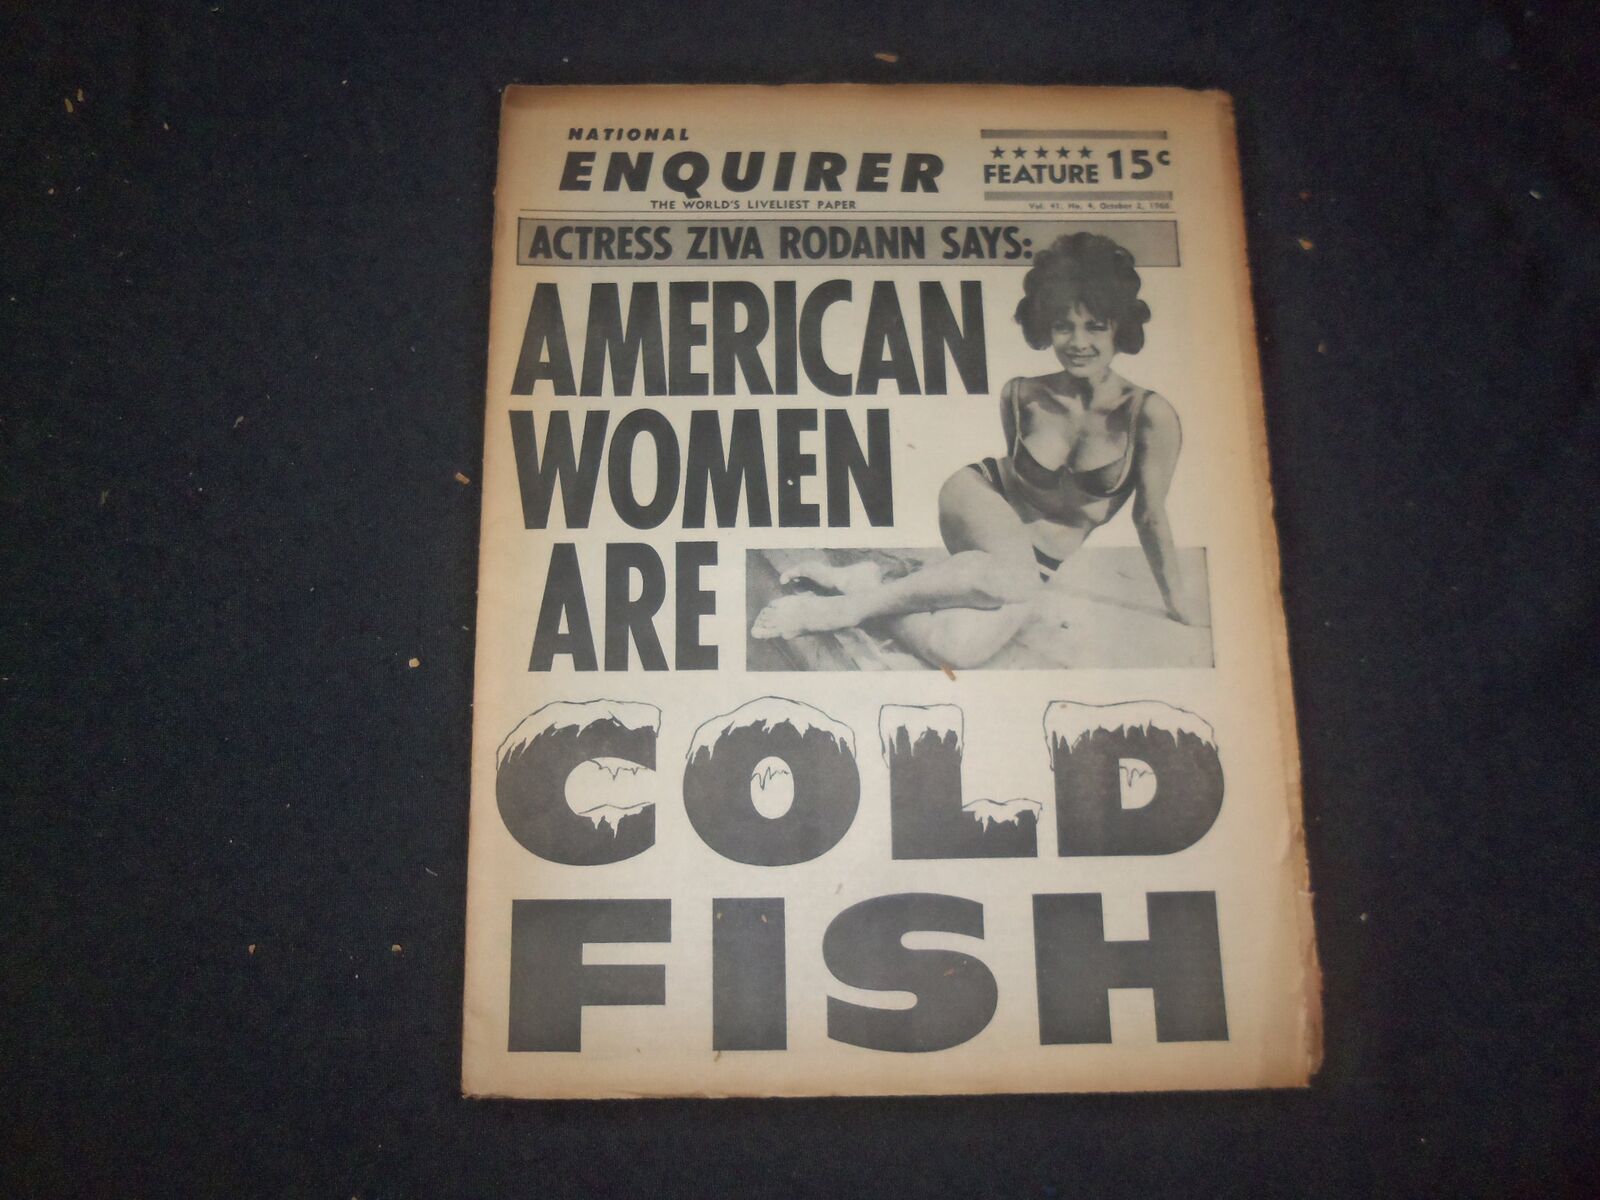 1966 OCT 2 NATIONAL ENQUIRER NEWSPAPER - ZIVA RODANN: WOMEN COLD FISH - NP 7424